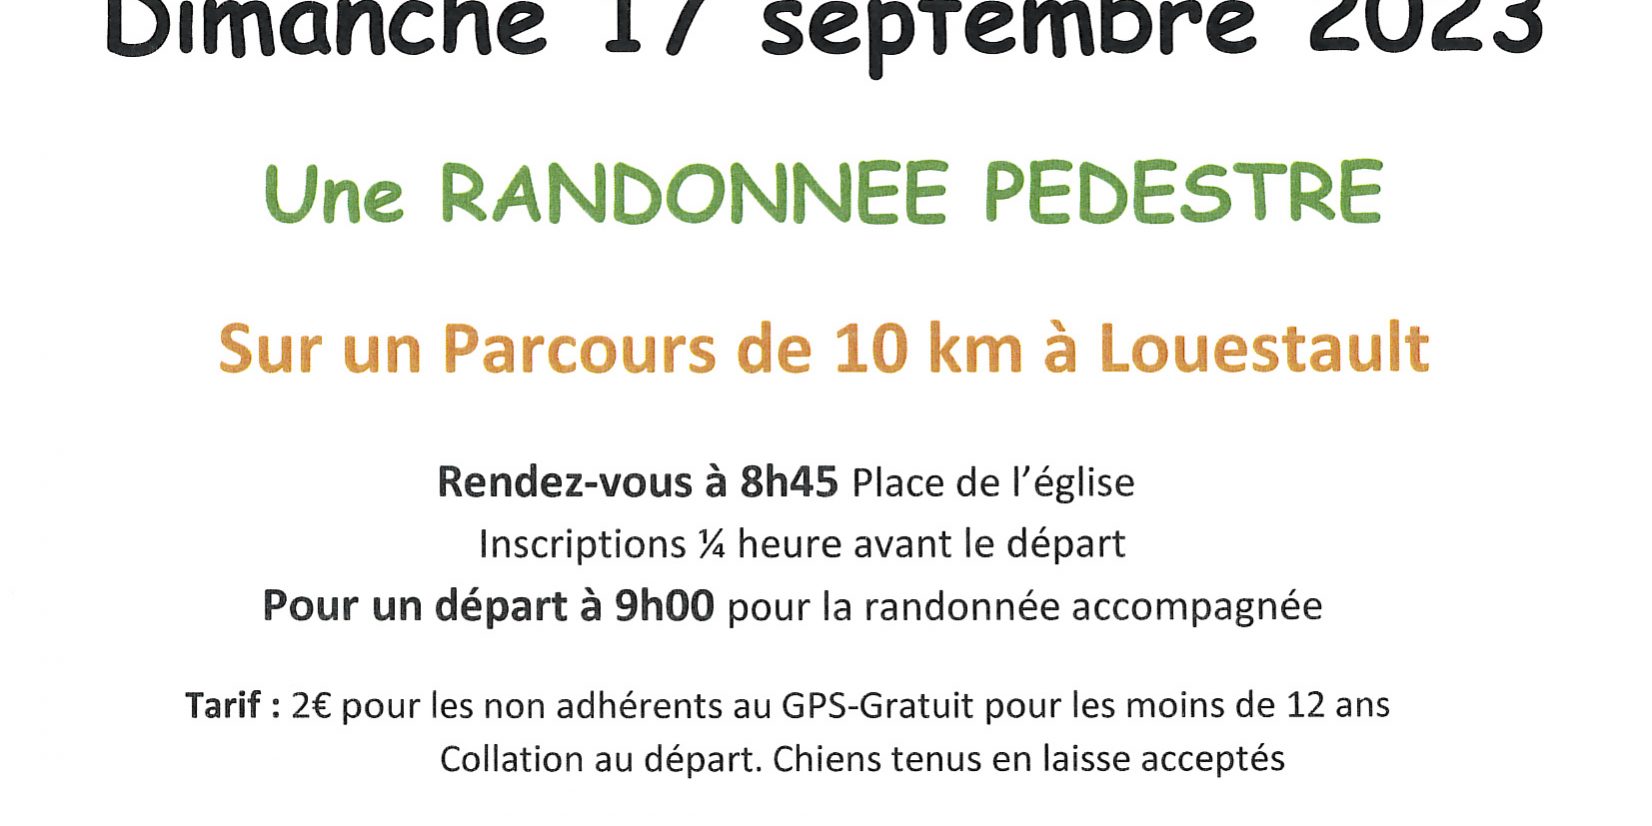 GPS - Randonnée pédestre Dimanche 17 septembre 2023 - Commune de Sonzay